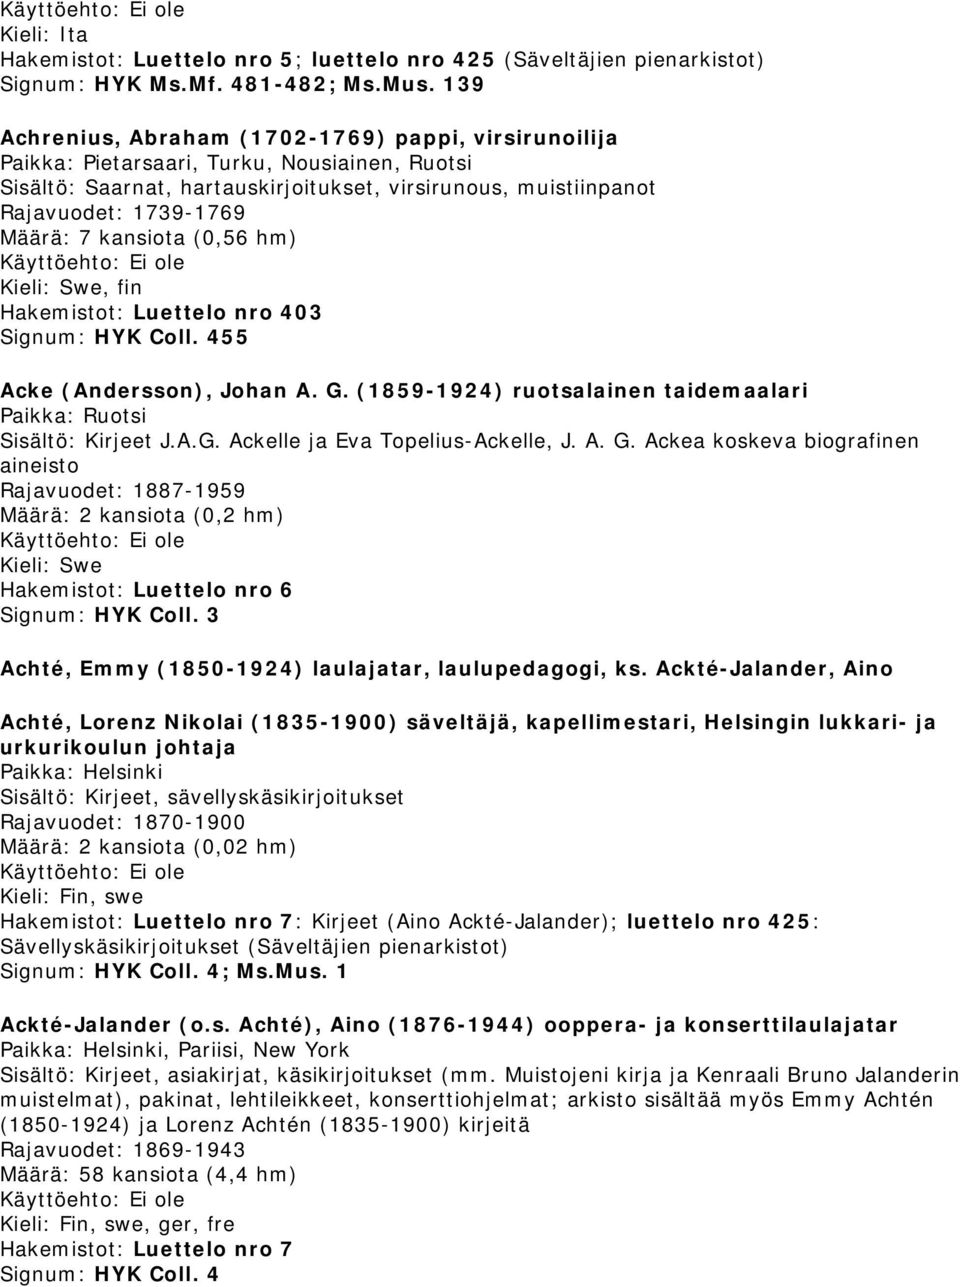 7 kansiota (0,56 hm), fin Hakemistot: Luettelo nro 403 Signum: HYK Coll. 455 Acke (Andersson), Johan A. G. (1859-1924) ruotsalainen taidemaalari Paikka: Ruotsi J.A.G. Ackelle ja Eva Topelius-Ackelle, J.